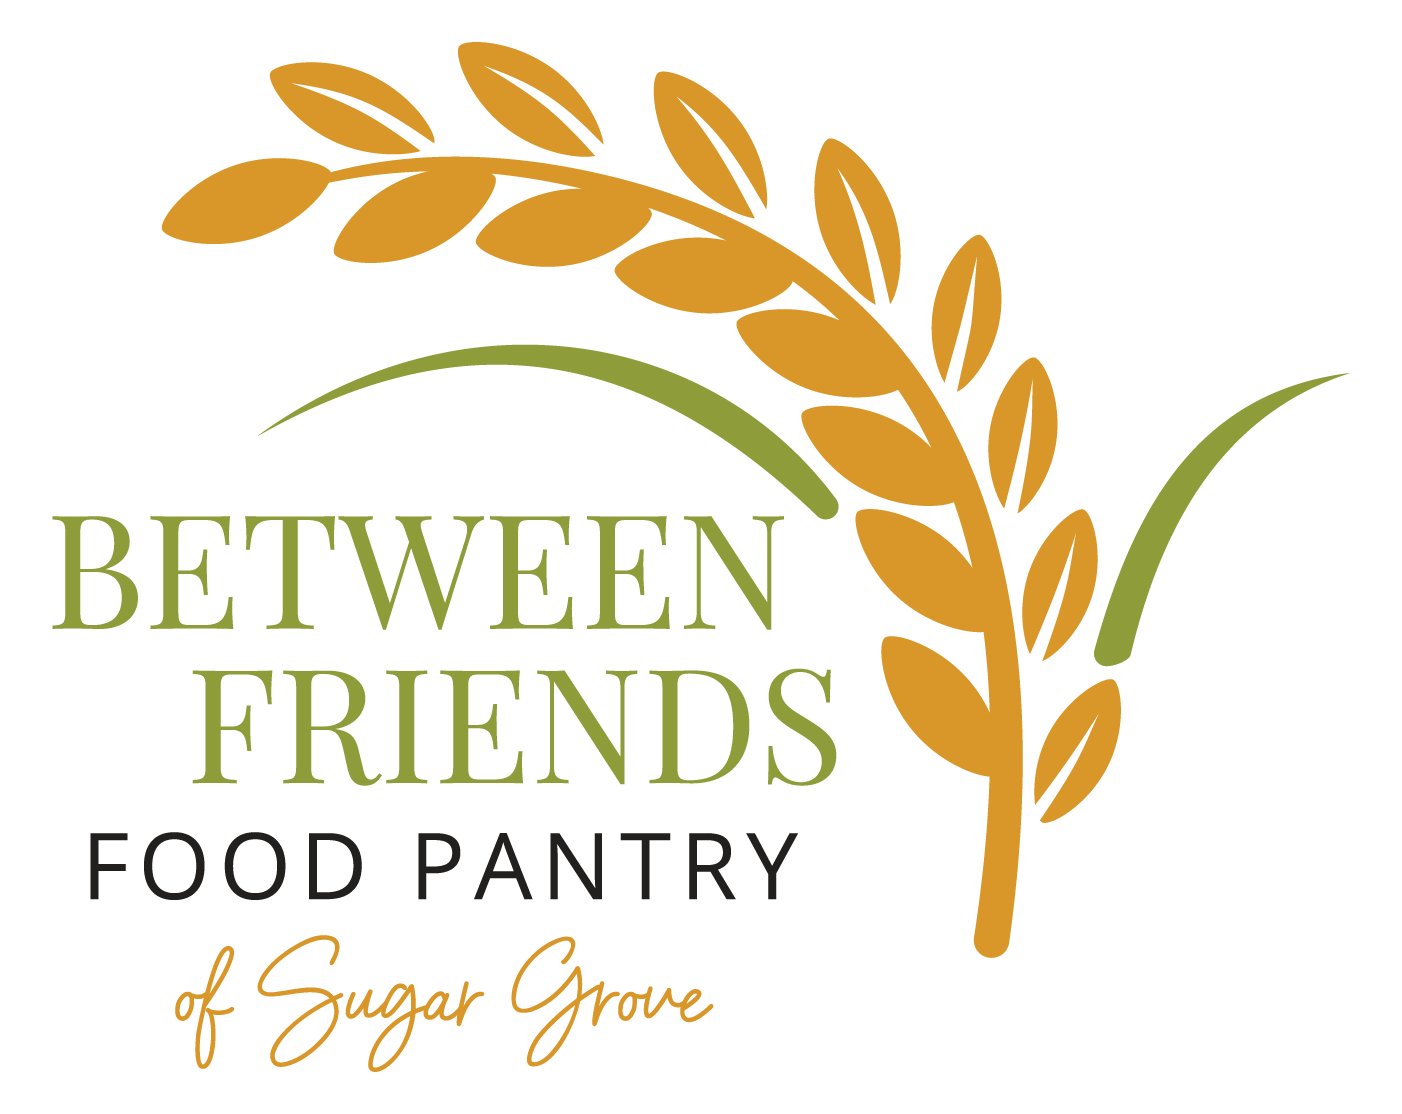 Between Friends Food Pantry of Sugar Grove logo